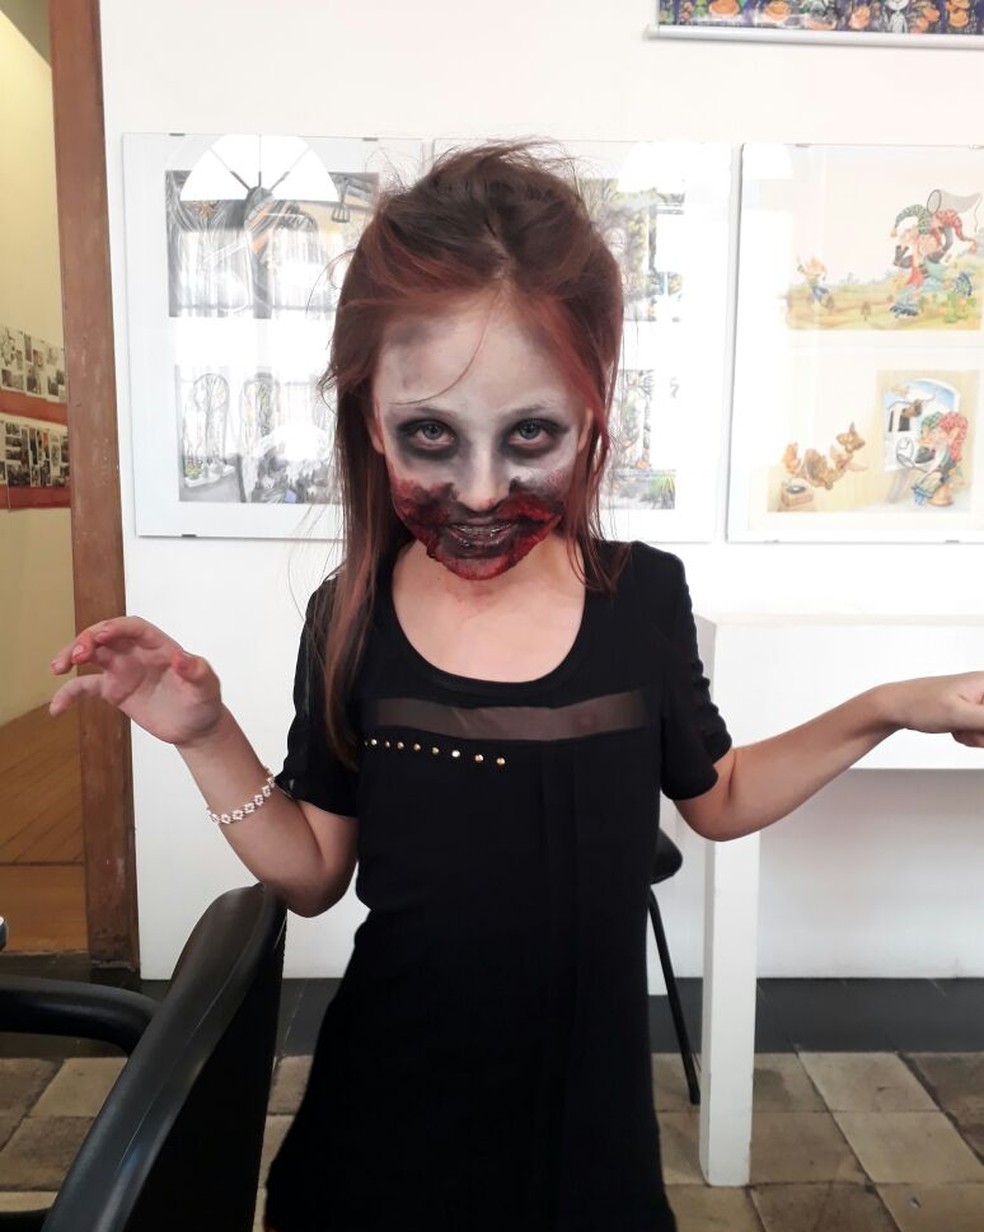 Crianças aprendem maquiagem de zumbis para o carnaval; 'É legal, engraçado  e dá para assustar as pessoas', Paraná